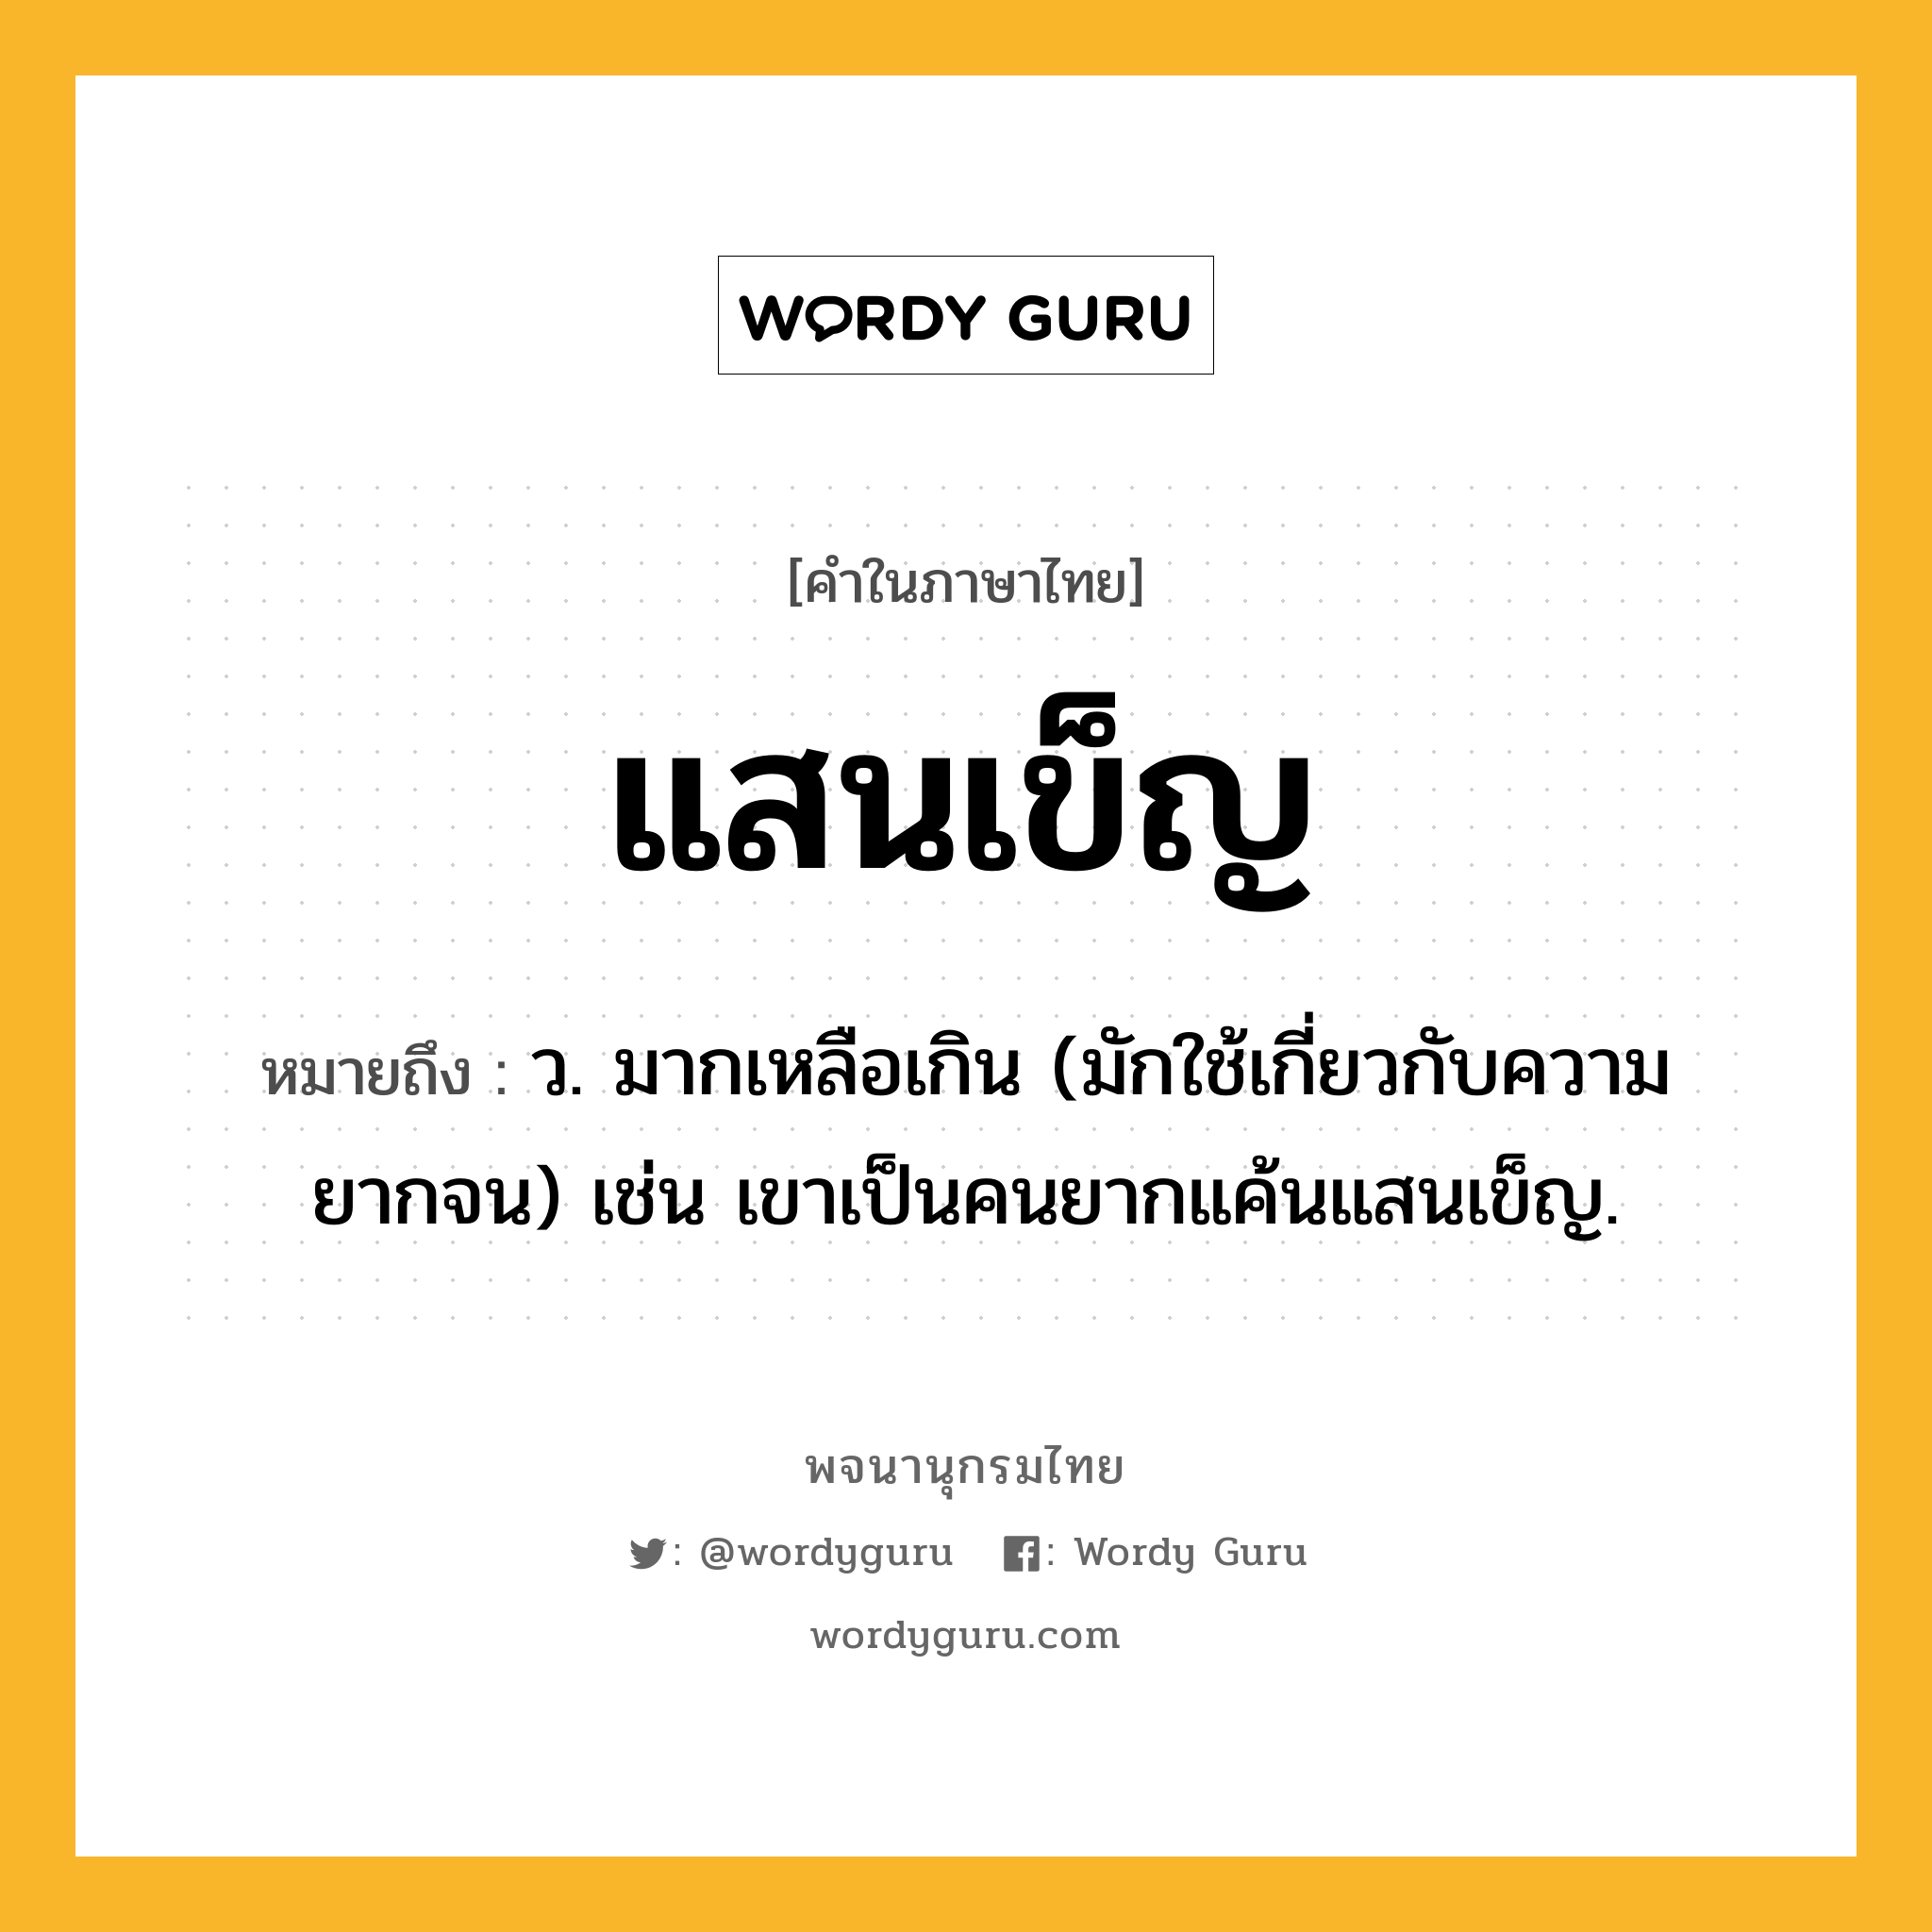 แสนเข็ญ ความหมาย หมายถึงอะไร?, คำในภาษาไทย แสนเข็ญ หมายถึง ว. มากเหลือเกิน (มักใช้เกี่ยวกับความยากจน) เช่น เขาเป็นคนยากแค้นแสนเข็ญ.